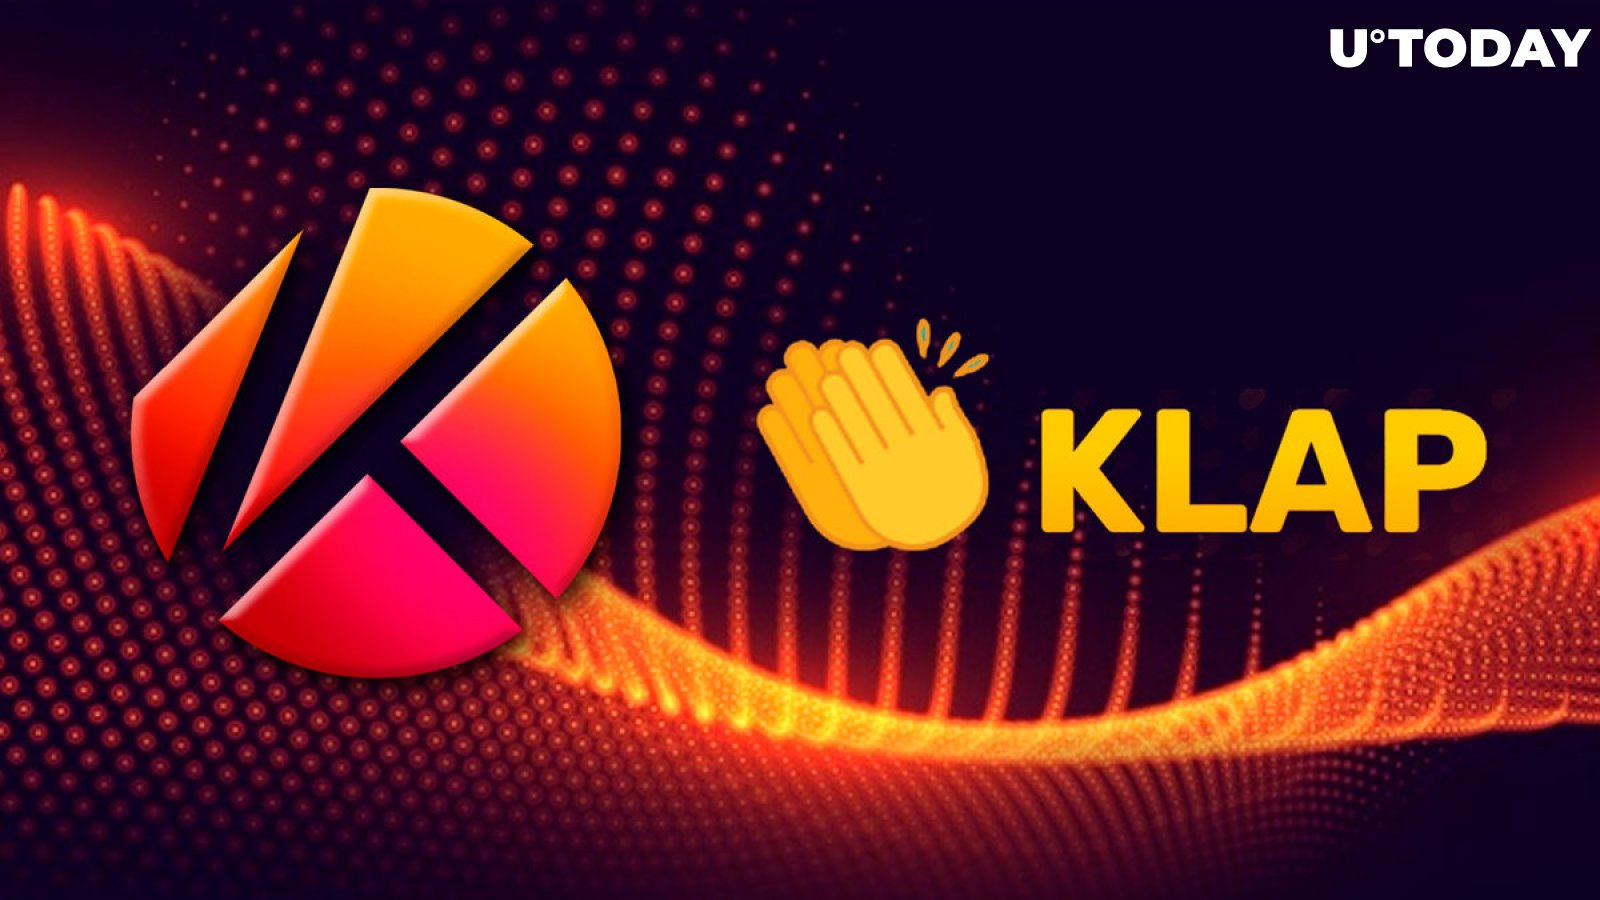 Klaytn's DeFi KLAP to Launch Native Crypto Token